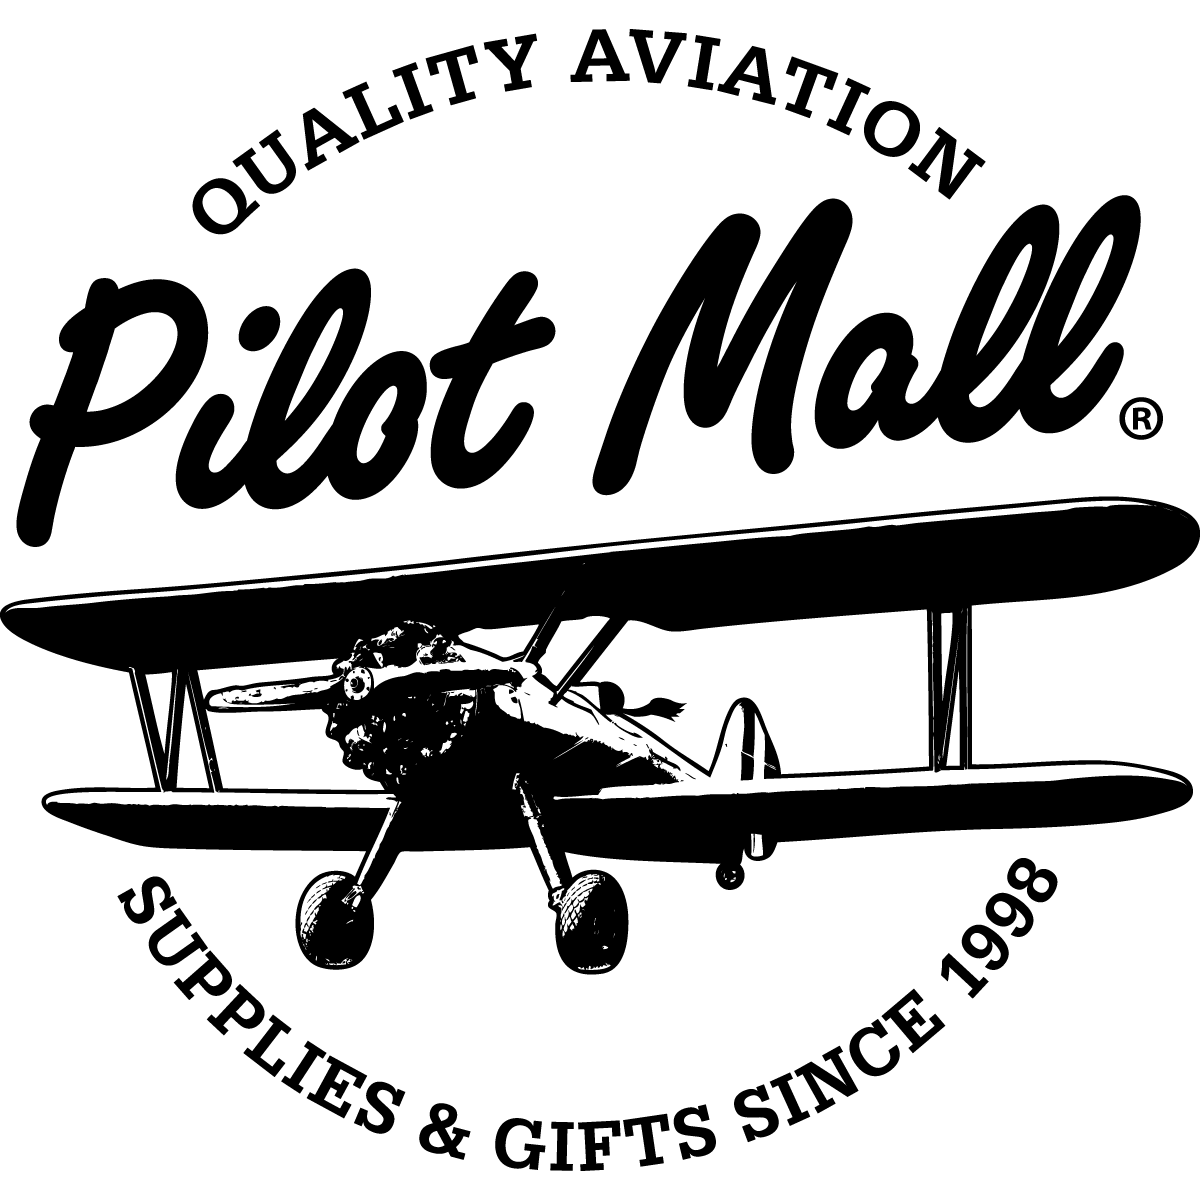 GA Aircraft Logo - PilotMall.com Pilot Shop